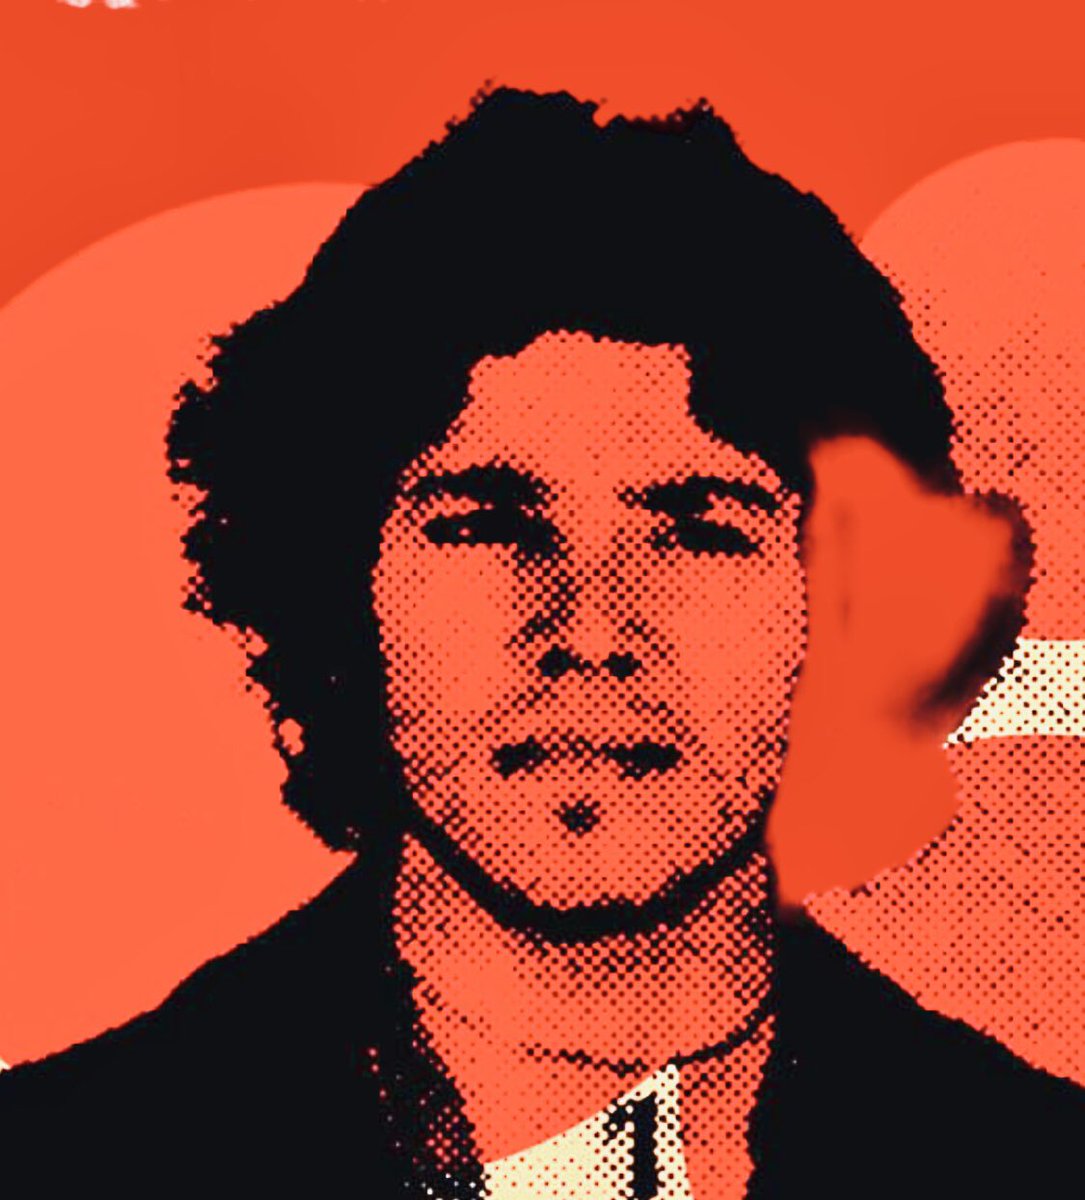 MORTE DI UN ANARCHICO 

Franco Serantini, anarchico.

Il 5 maggio 1972, viene massacrato dalla polizia, mentre partecipa ad una manifestazione antifascista a Pisa. 

Morirà due giorni dopo.

🌹

#FrancoSerantini